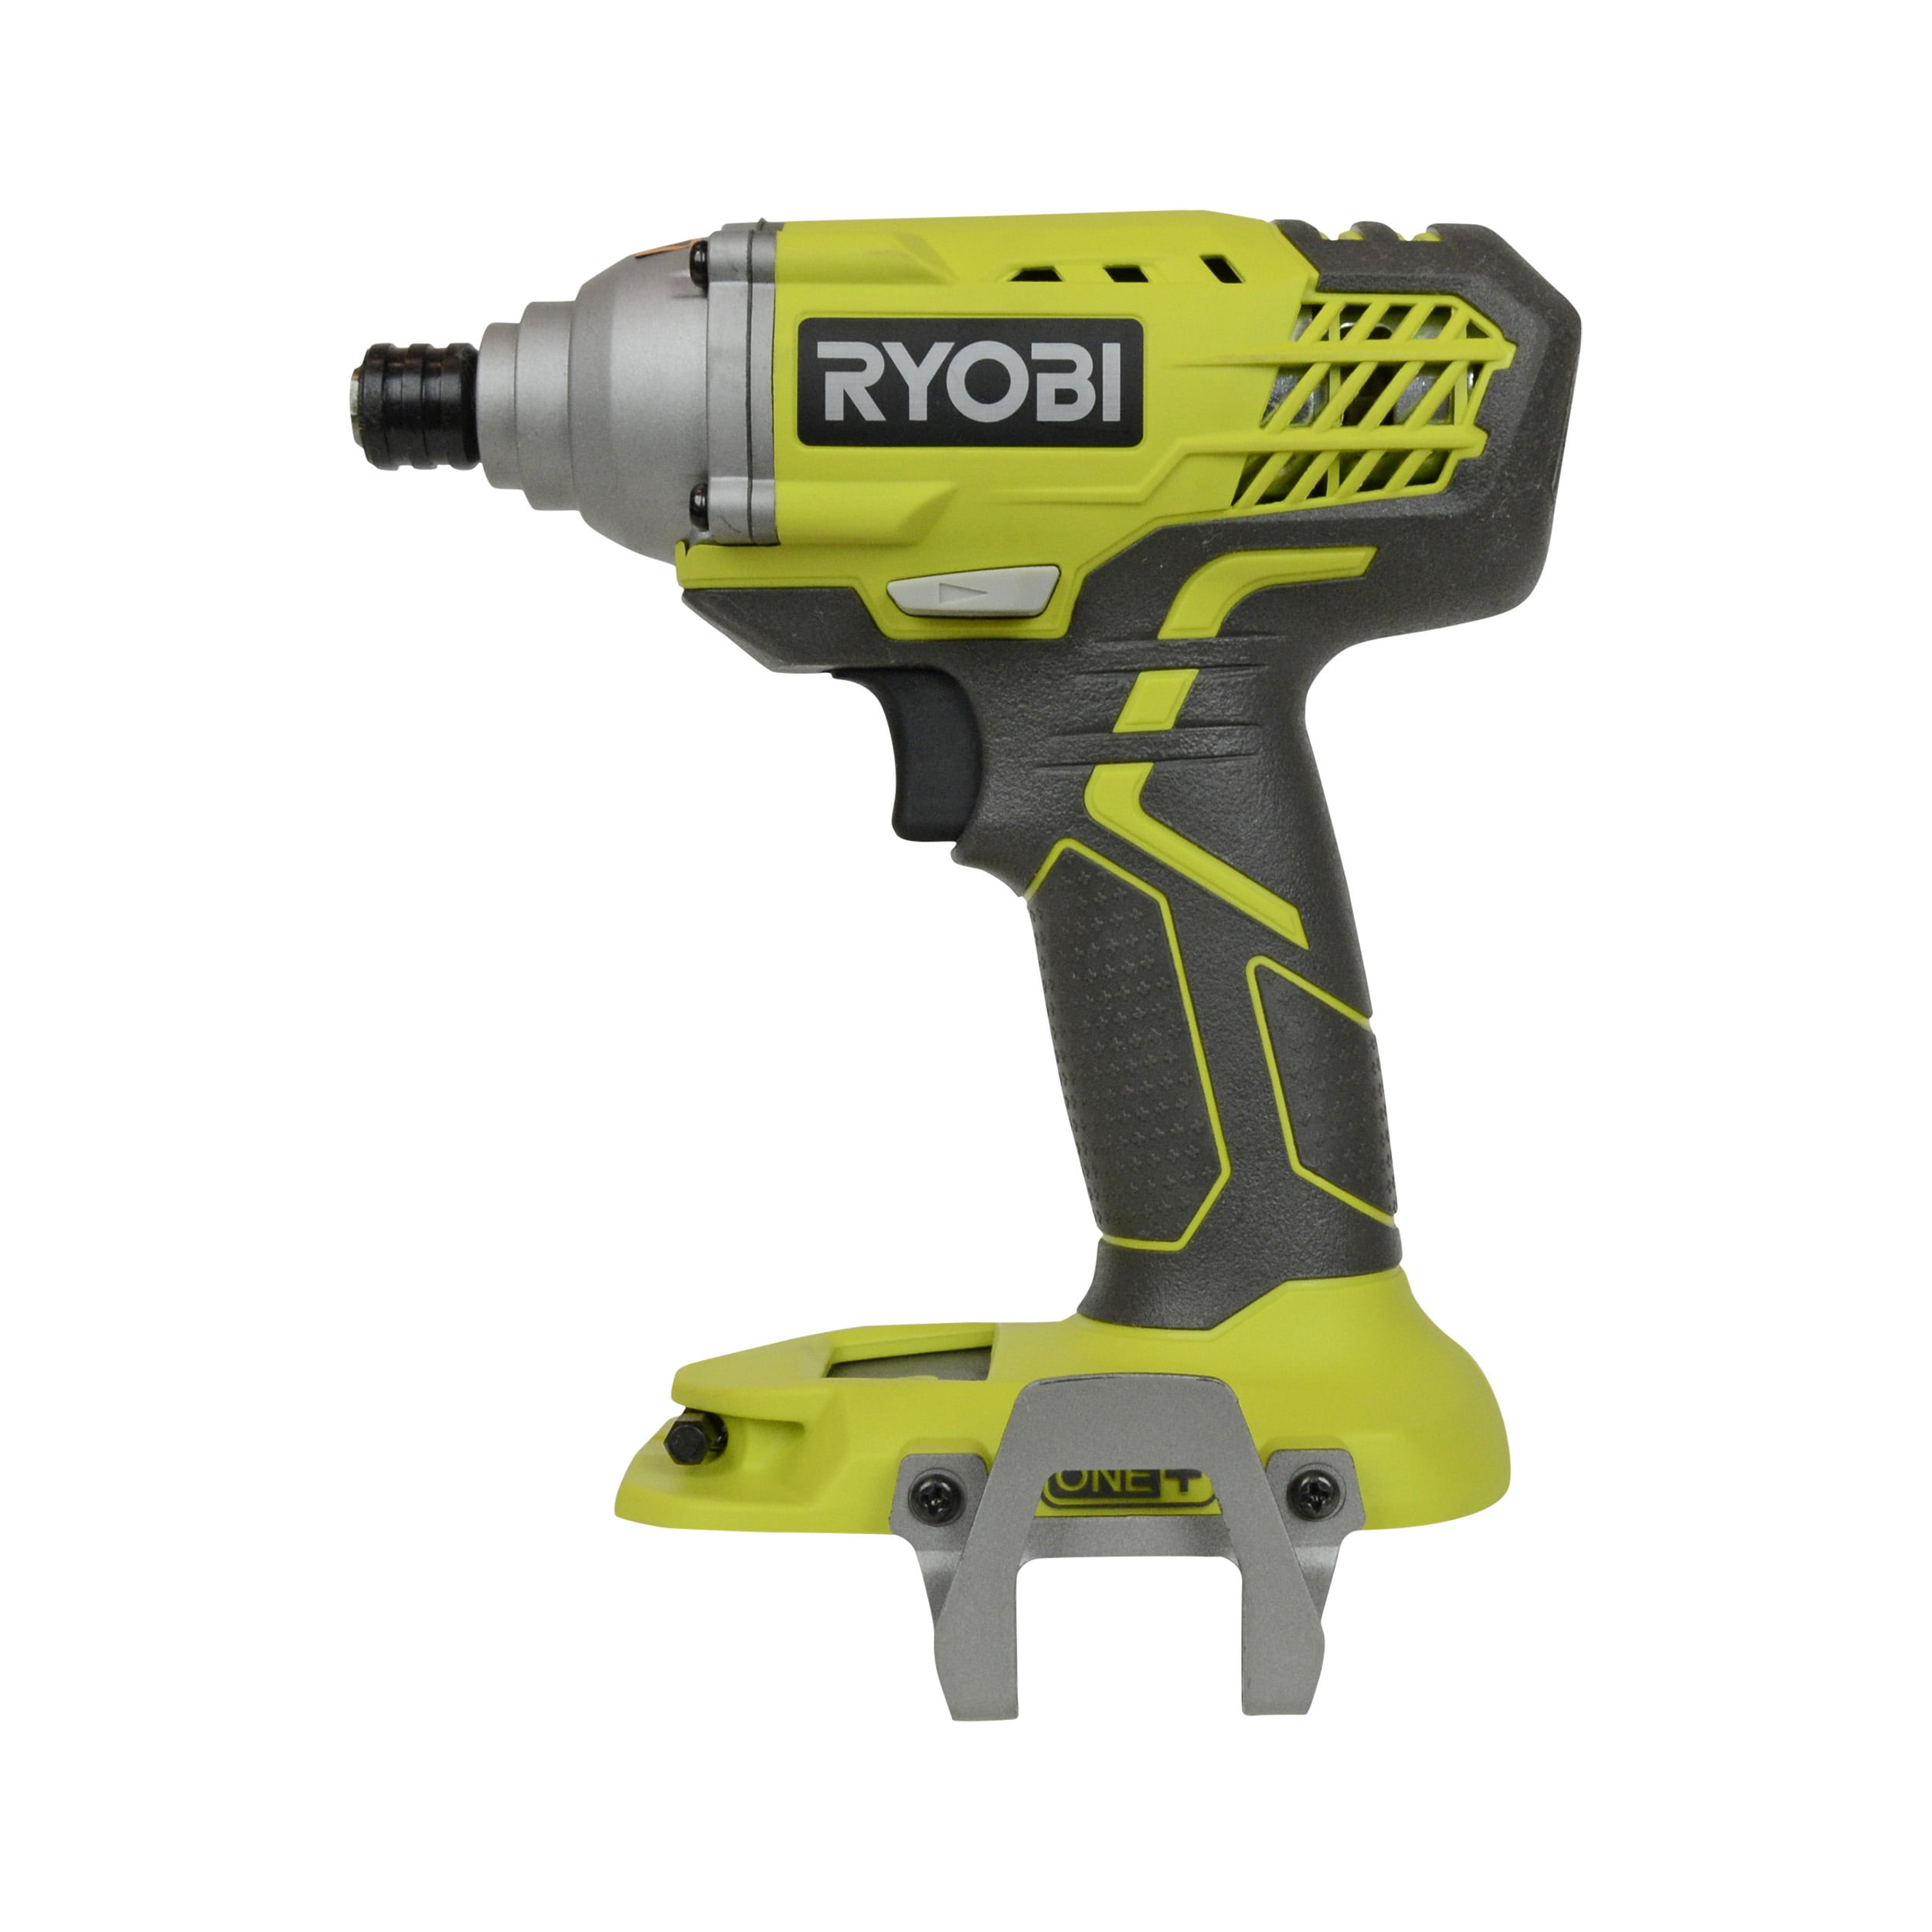 Ryobi Tools P235 18v 1 4 Impact Driver Bare Tool Walmart Com Walmart Com